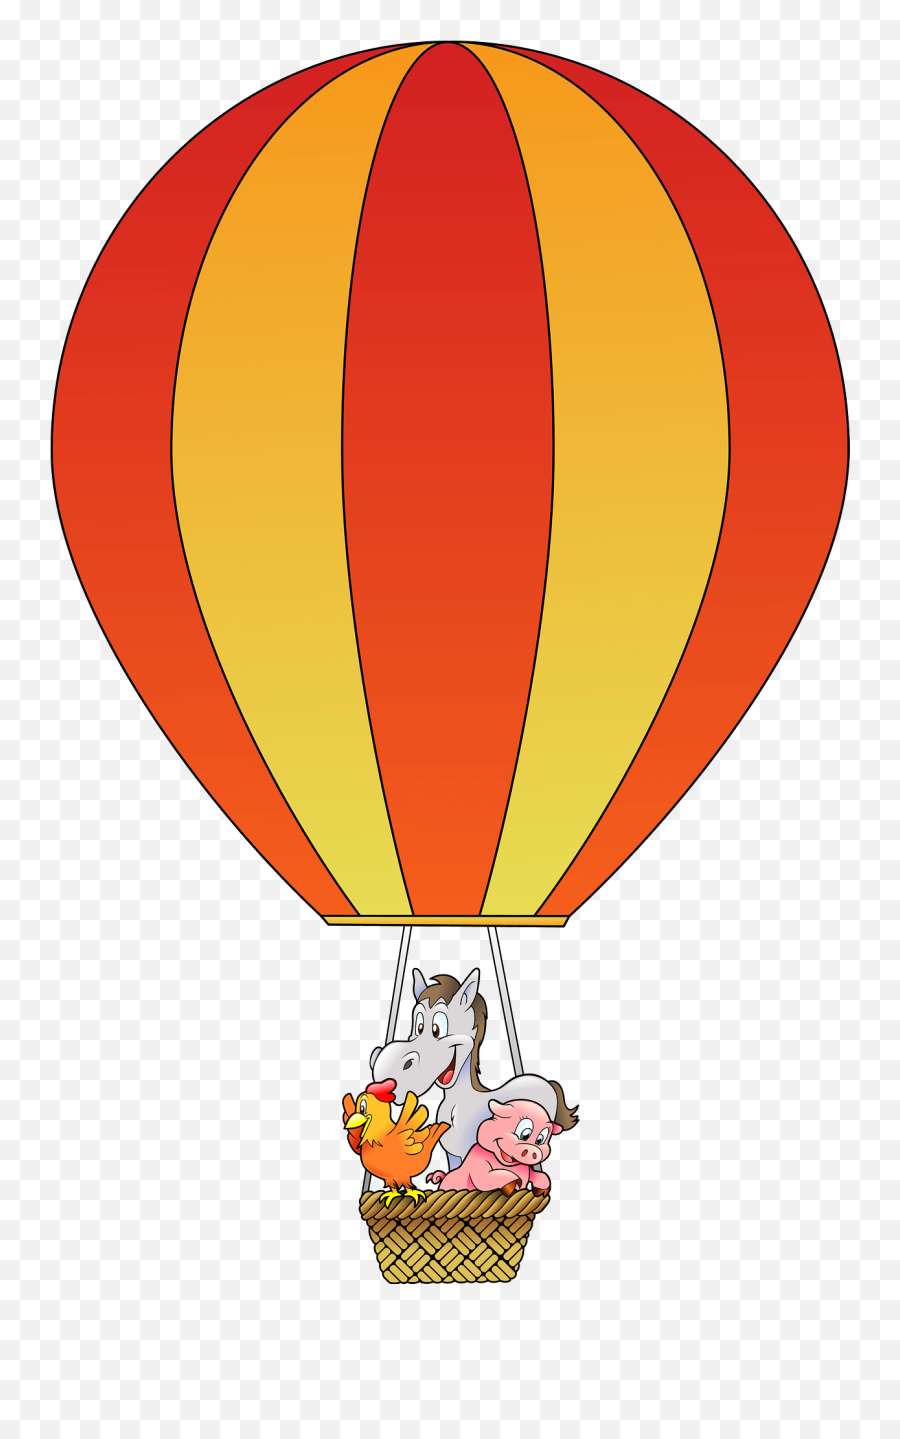 Hot Air Balloon Basket Clipart - Balloon Clip Art Cartoon Hot Air Balloon Emoji,Farm Animals Clipart